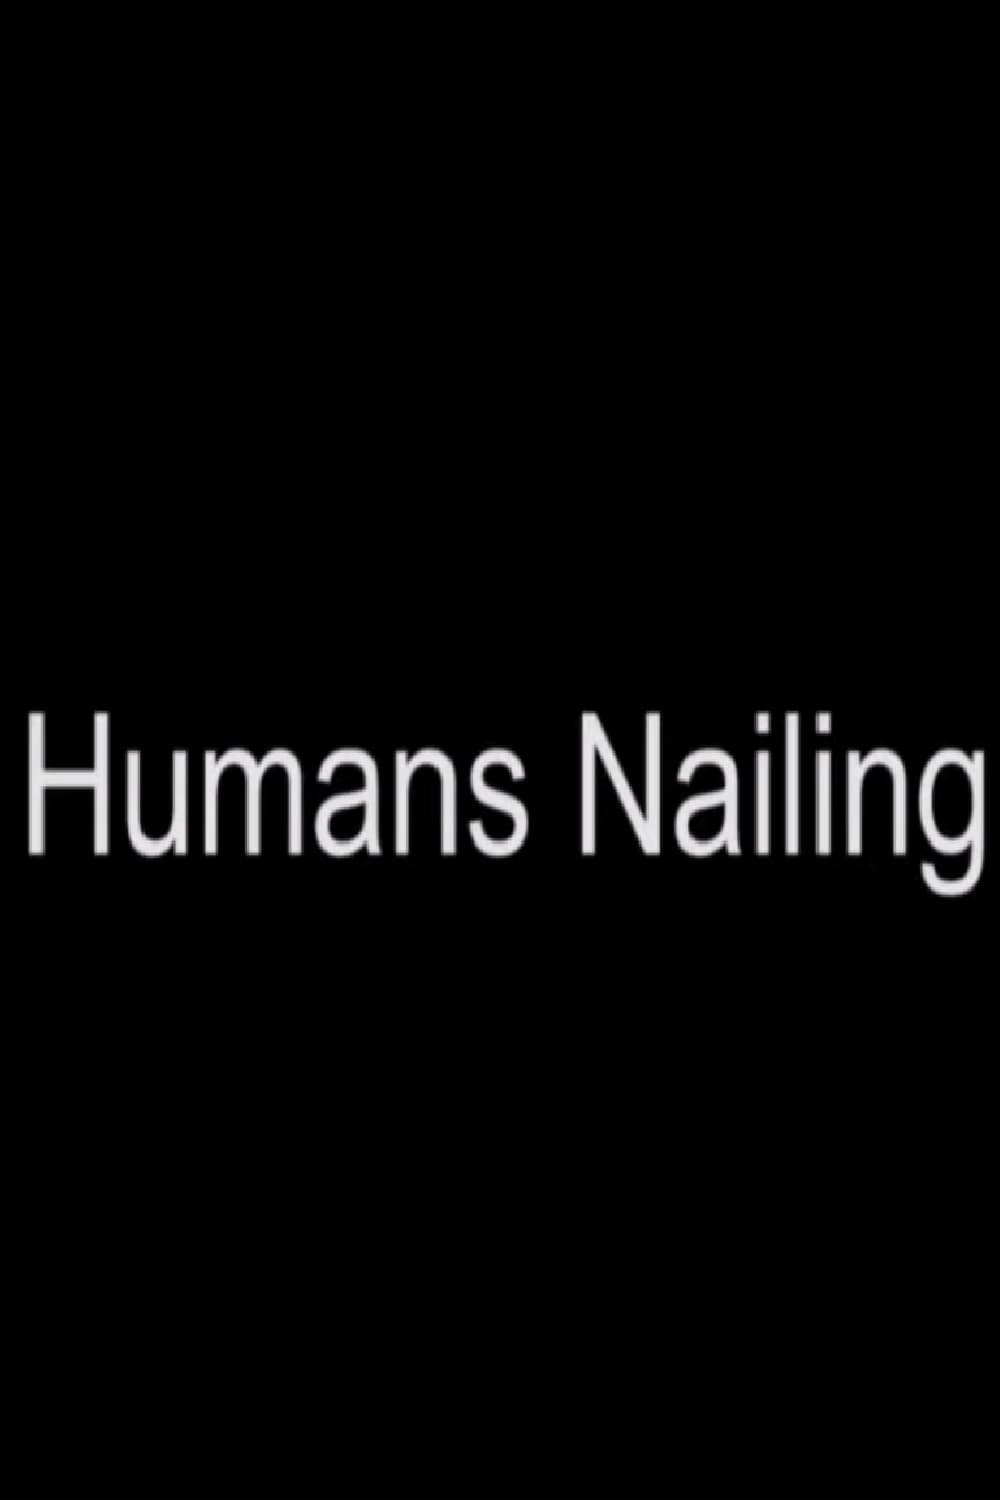 Humans Nailing